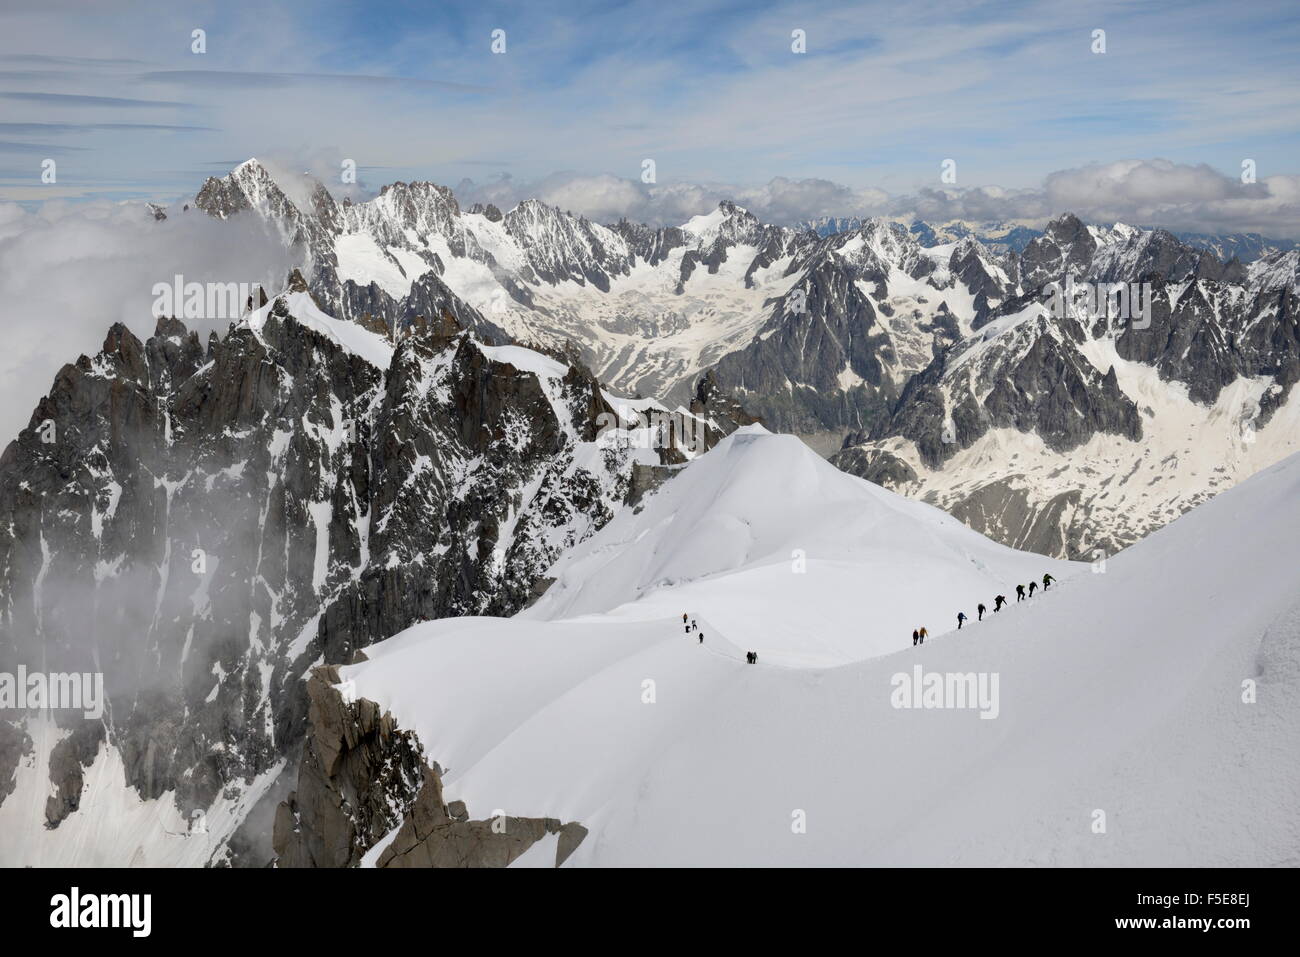 Les alpinistes et grimpeurs, Massif du Mont Blanc, Aiguille du Midi, Chamonix, Haute Savoie, Alpes, France, Europe Banque D'Images